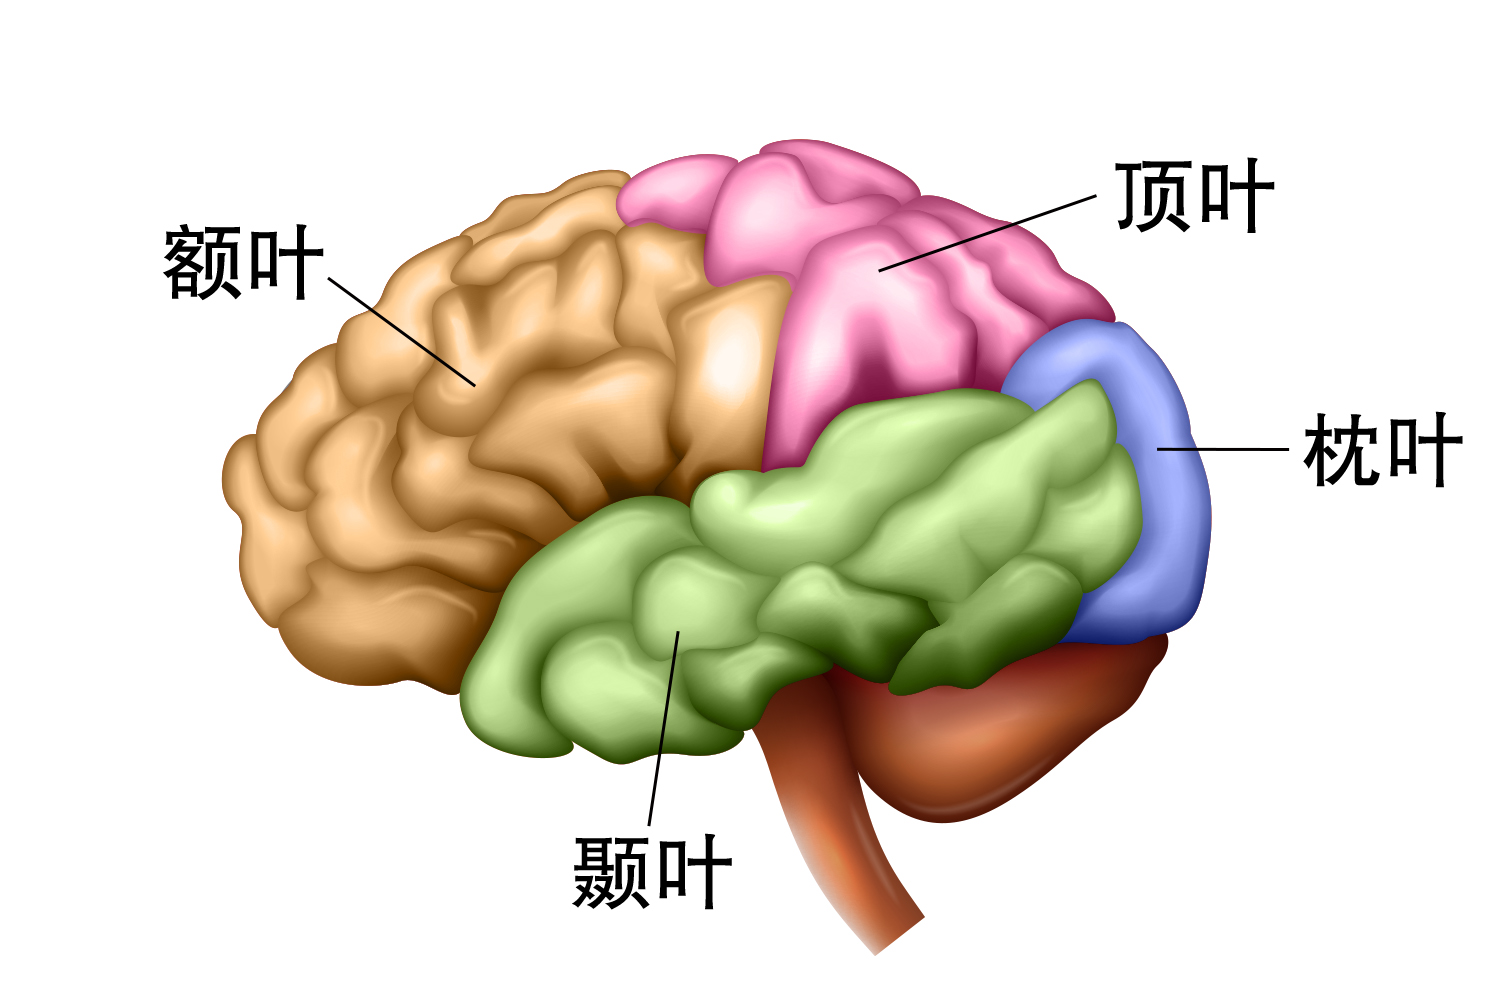 脑区位置图